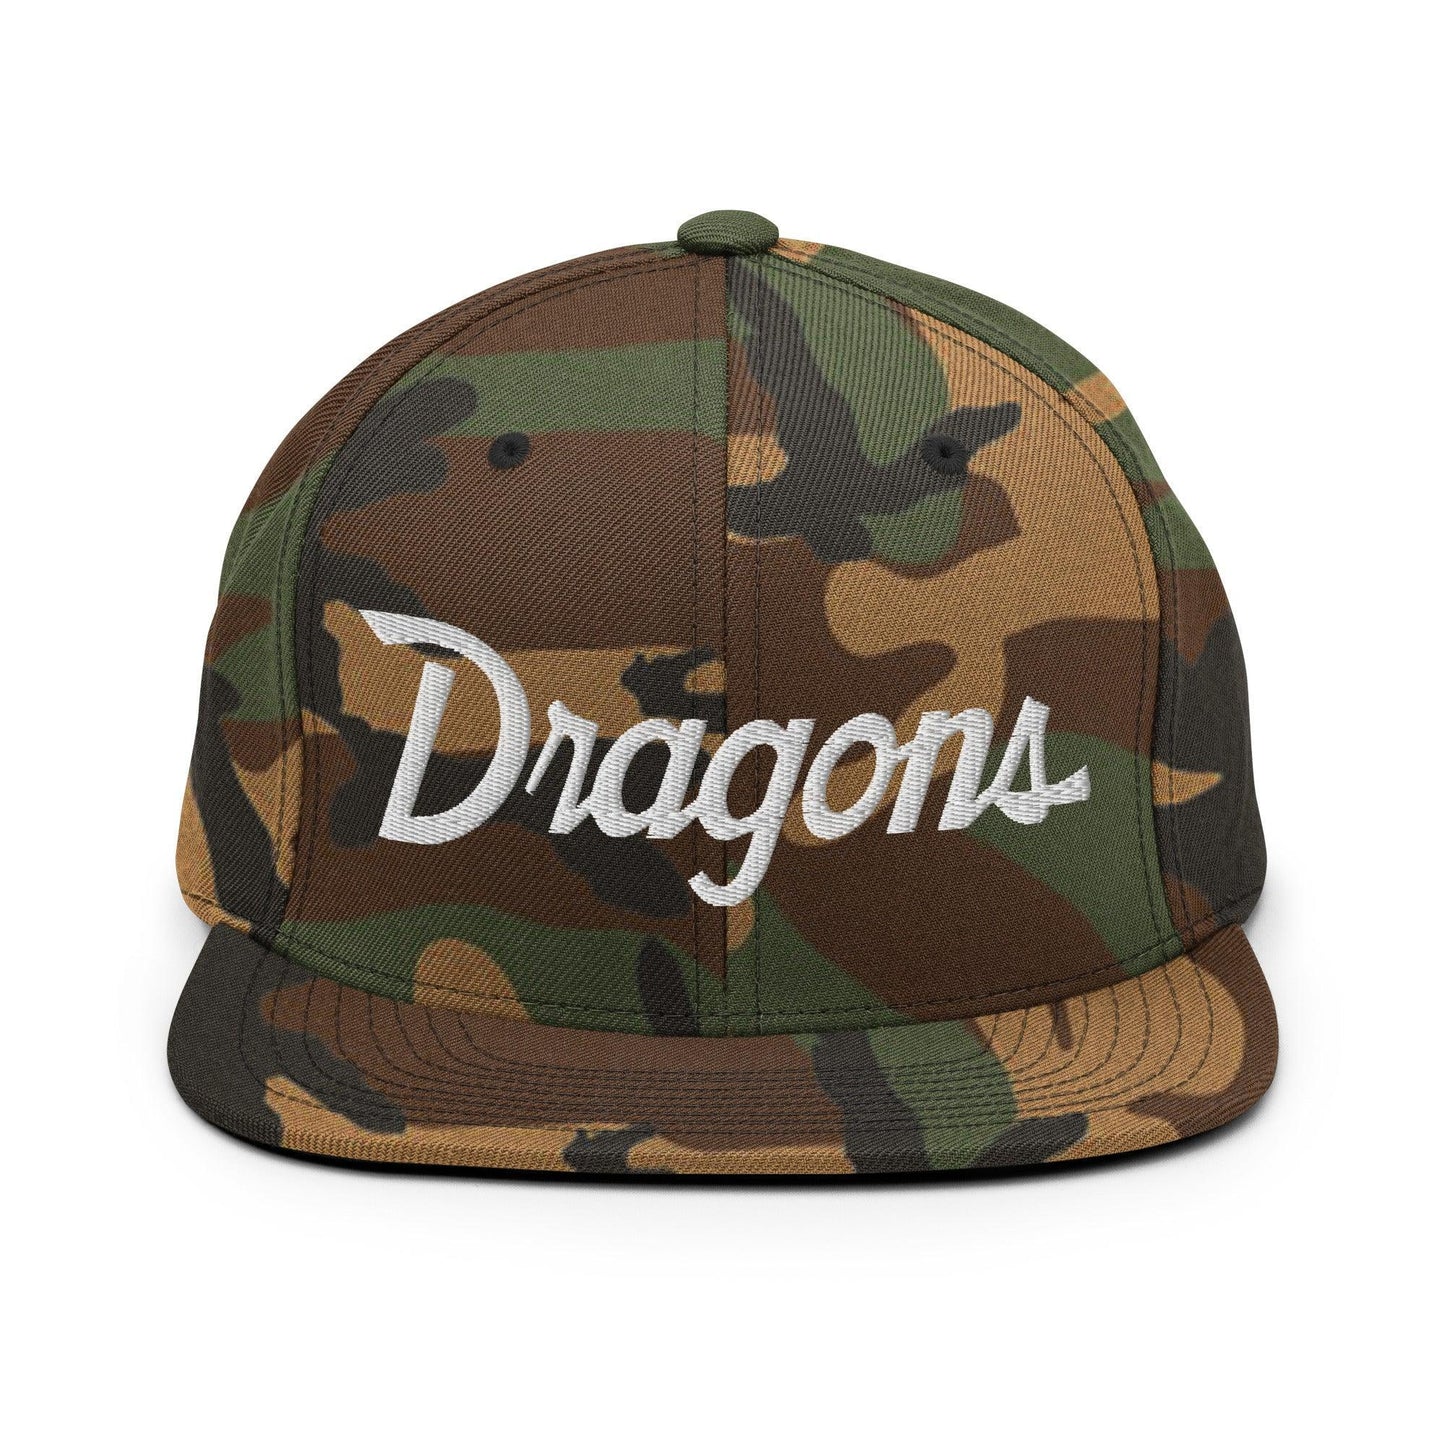 Dragons School Mascot Snapback Hat Green Camo